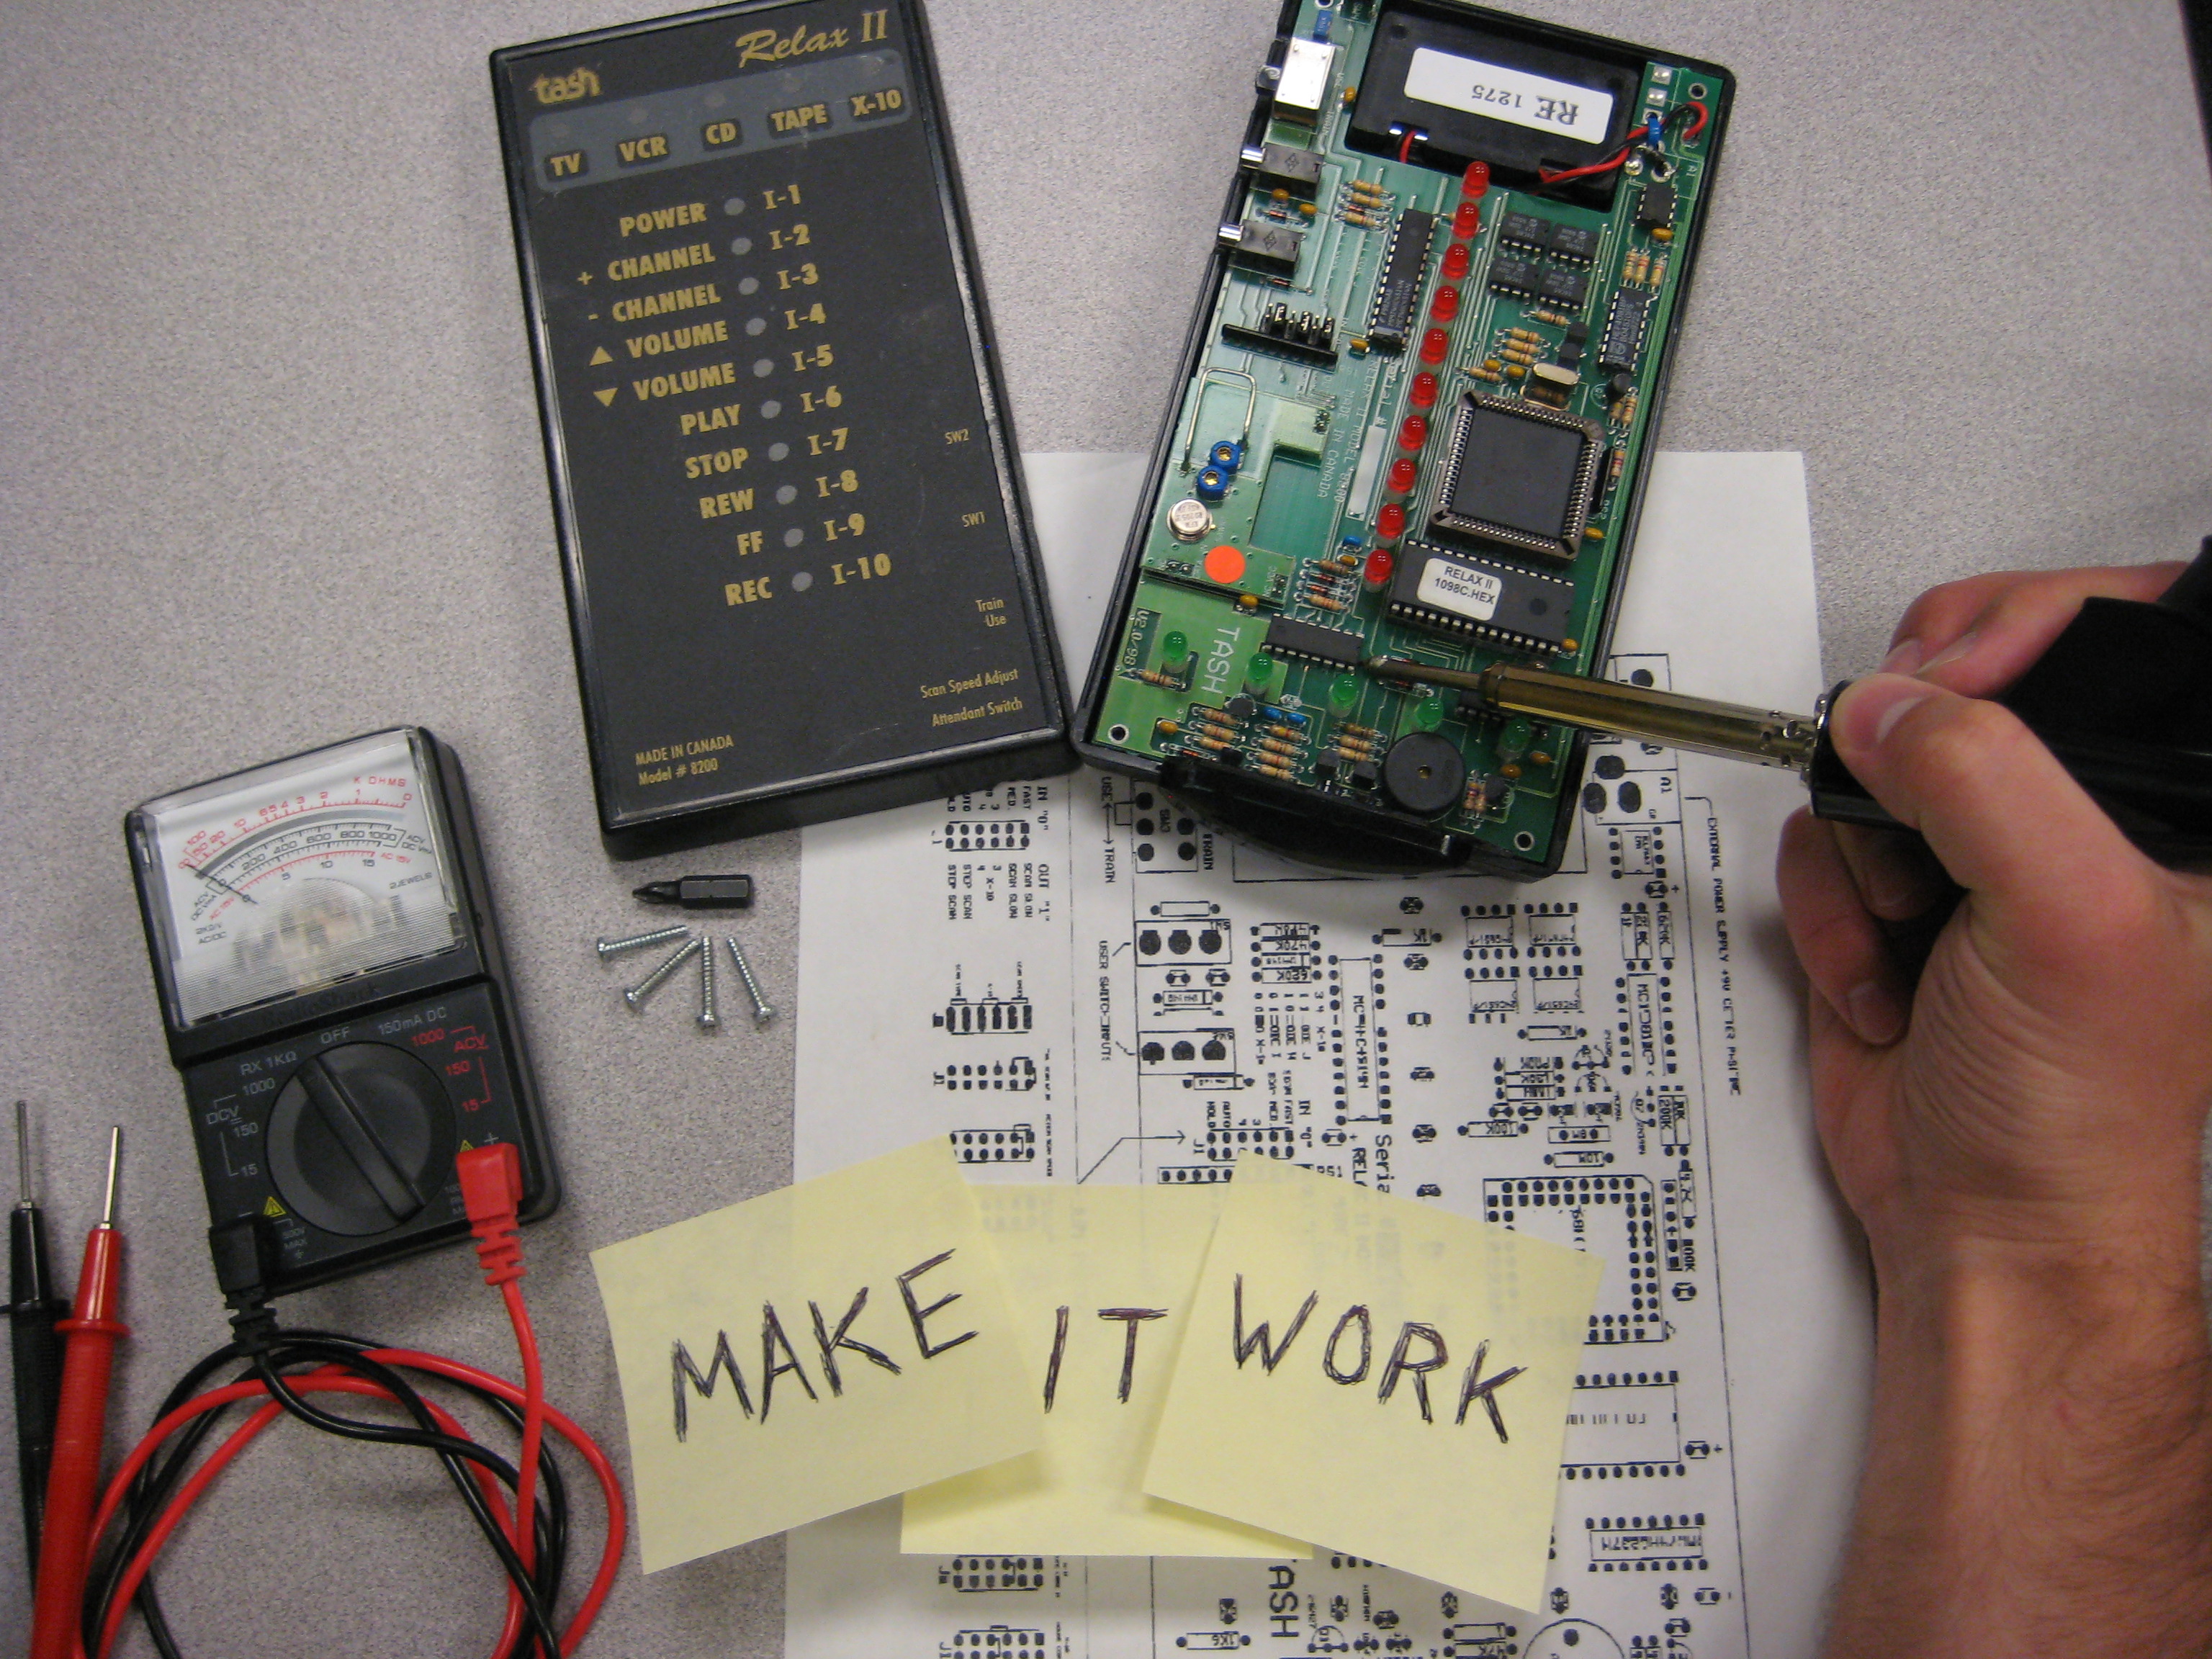 Performing electronics repairs